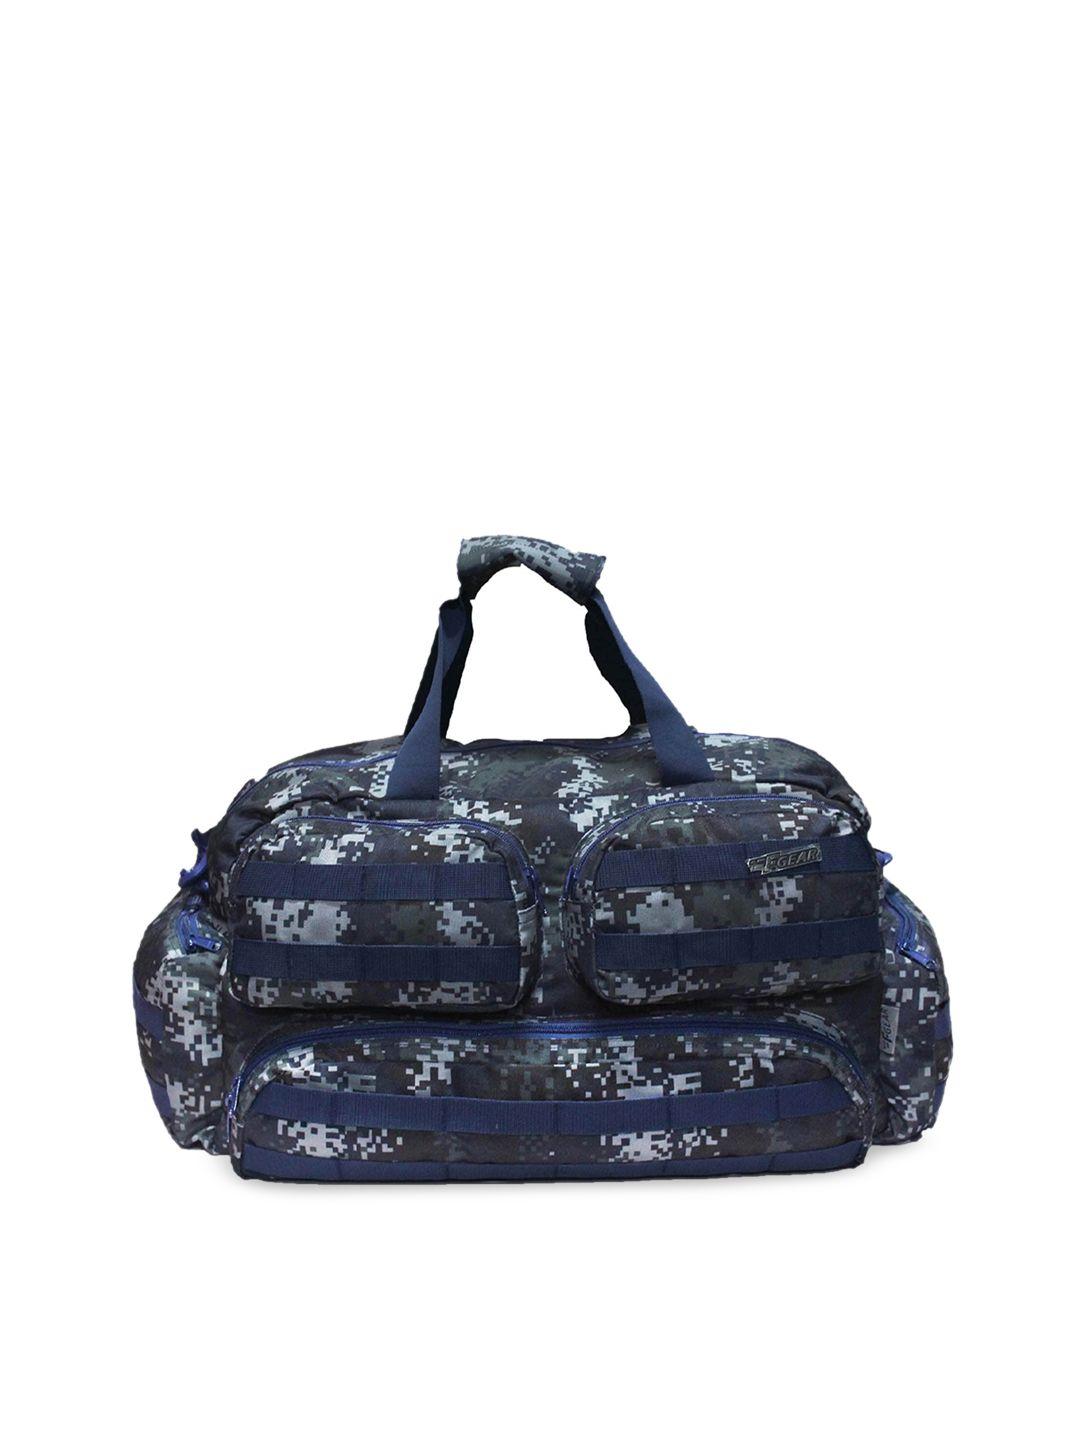 f gear blue & grey printed duffel bag